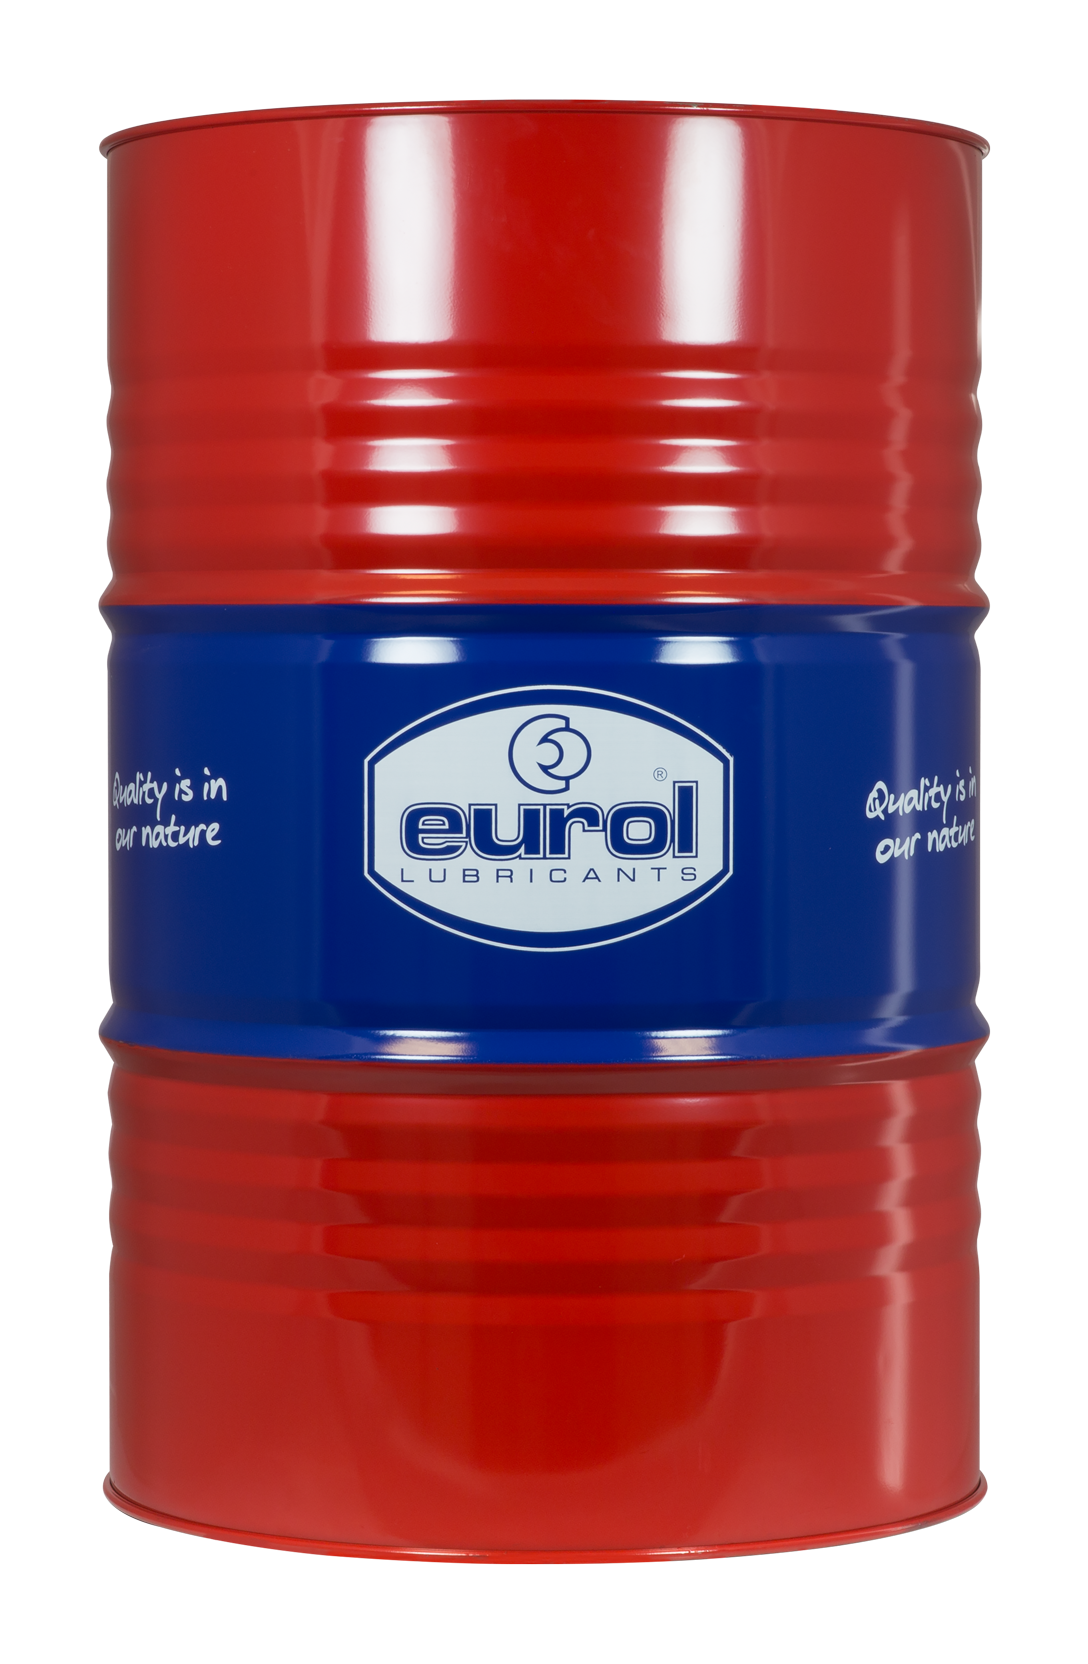 Eurol Hykrol ISO 100 Hydraulic Oil